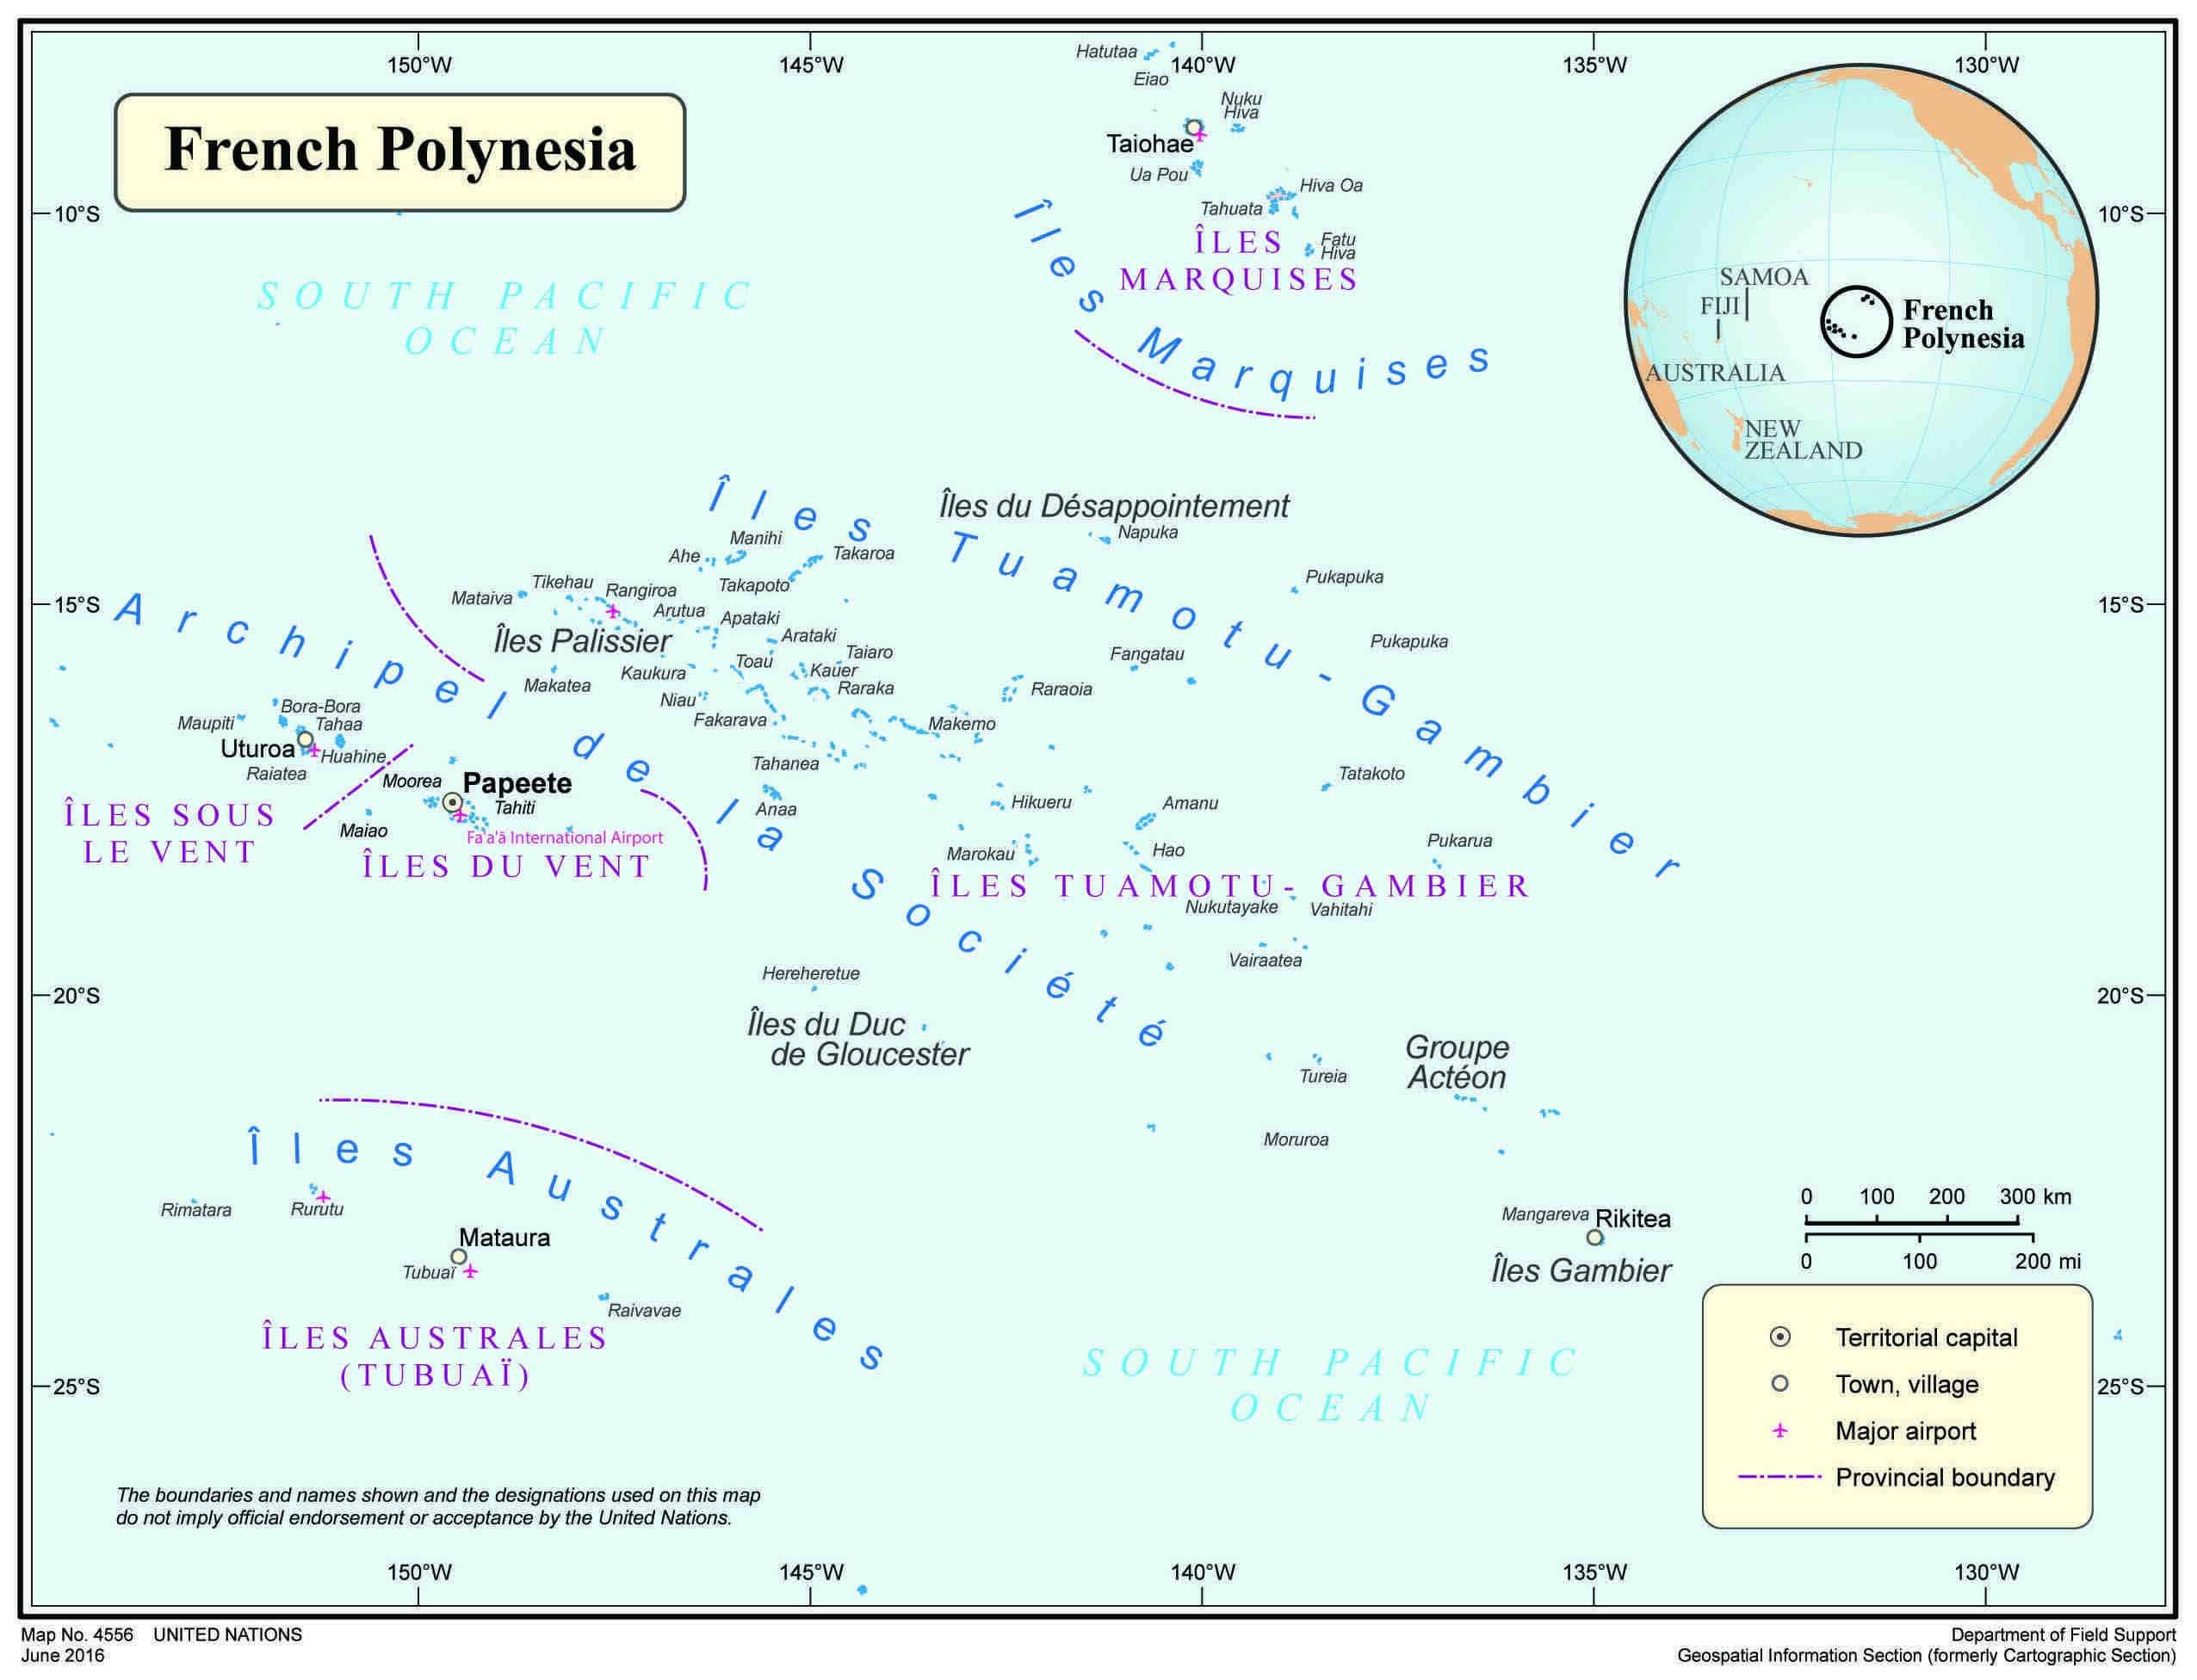 Kto skolonizował Polinezję Francuską?